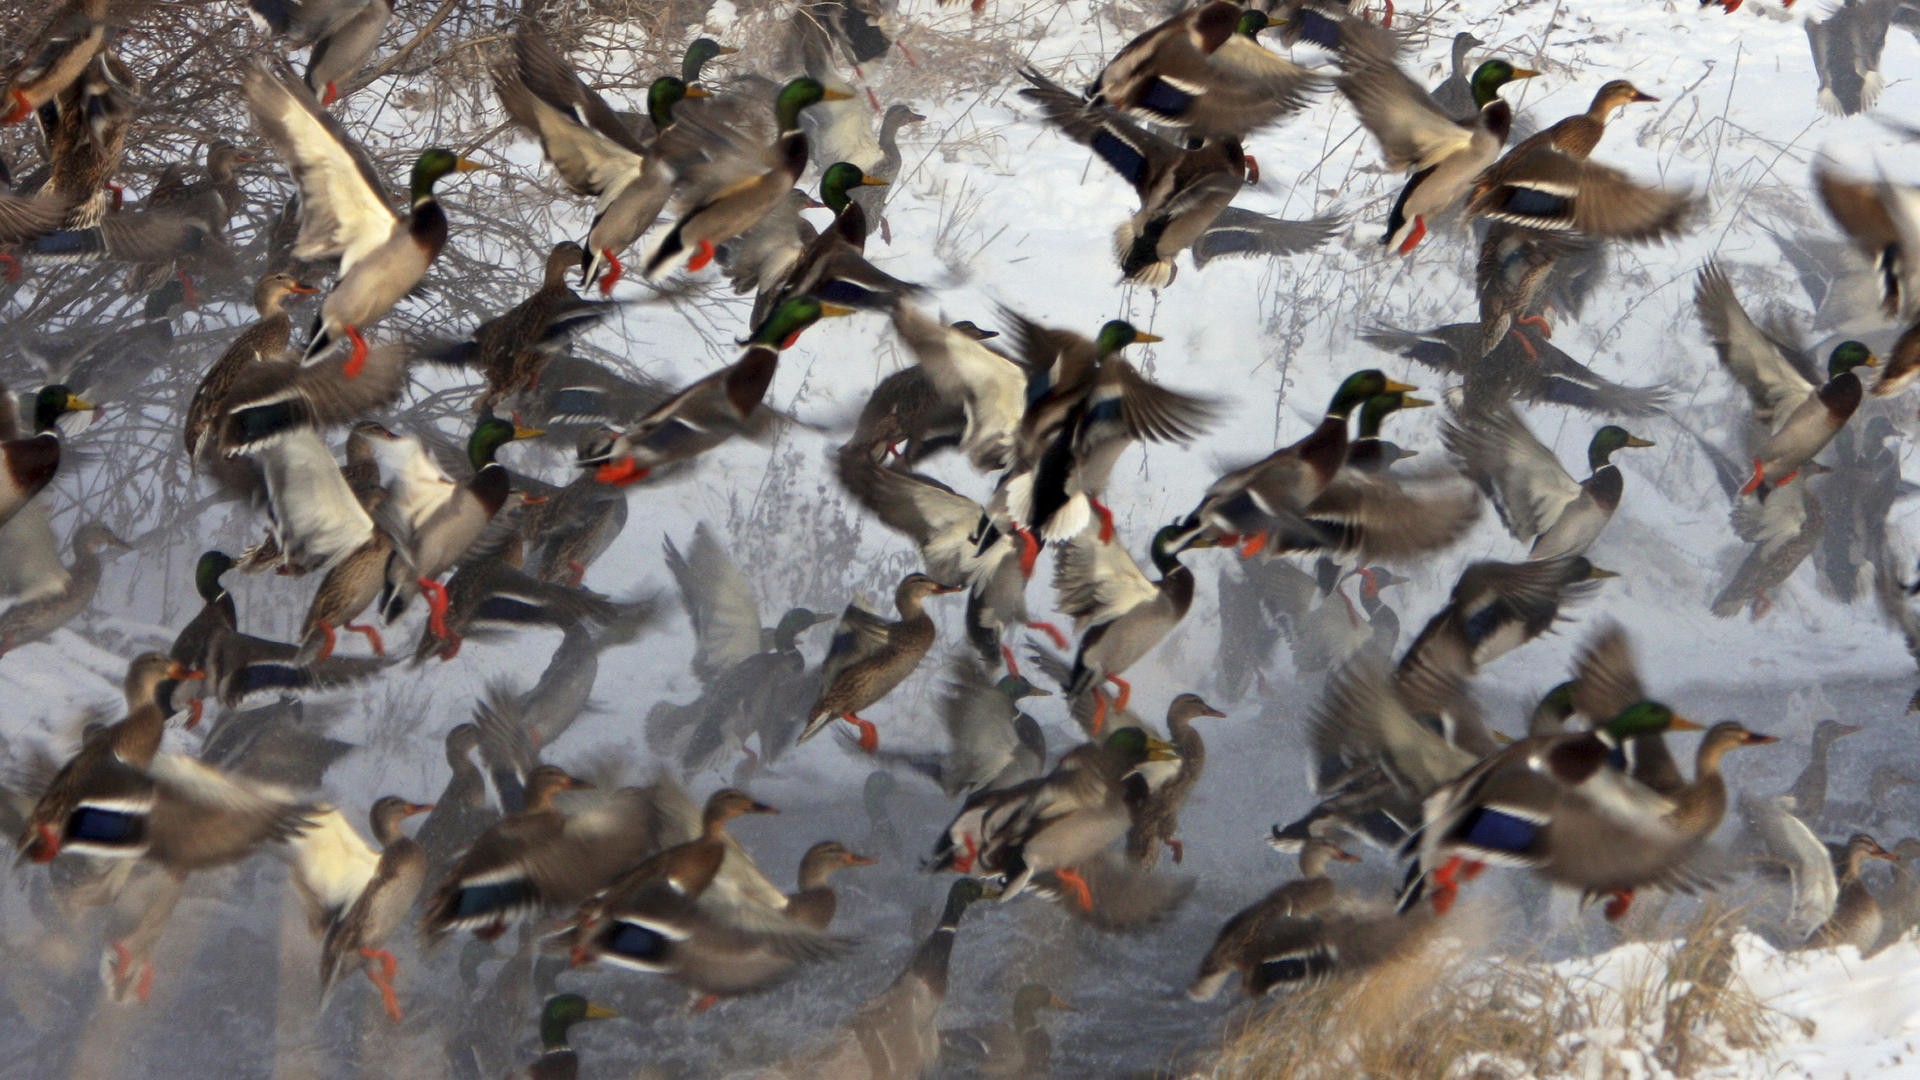 Duck Hunting Desktop Wallpaper Image Pictures Becuo